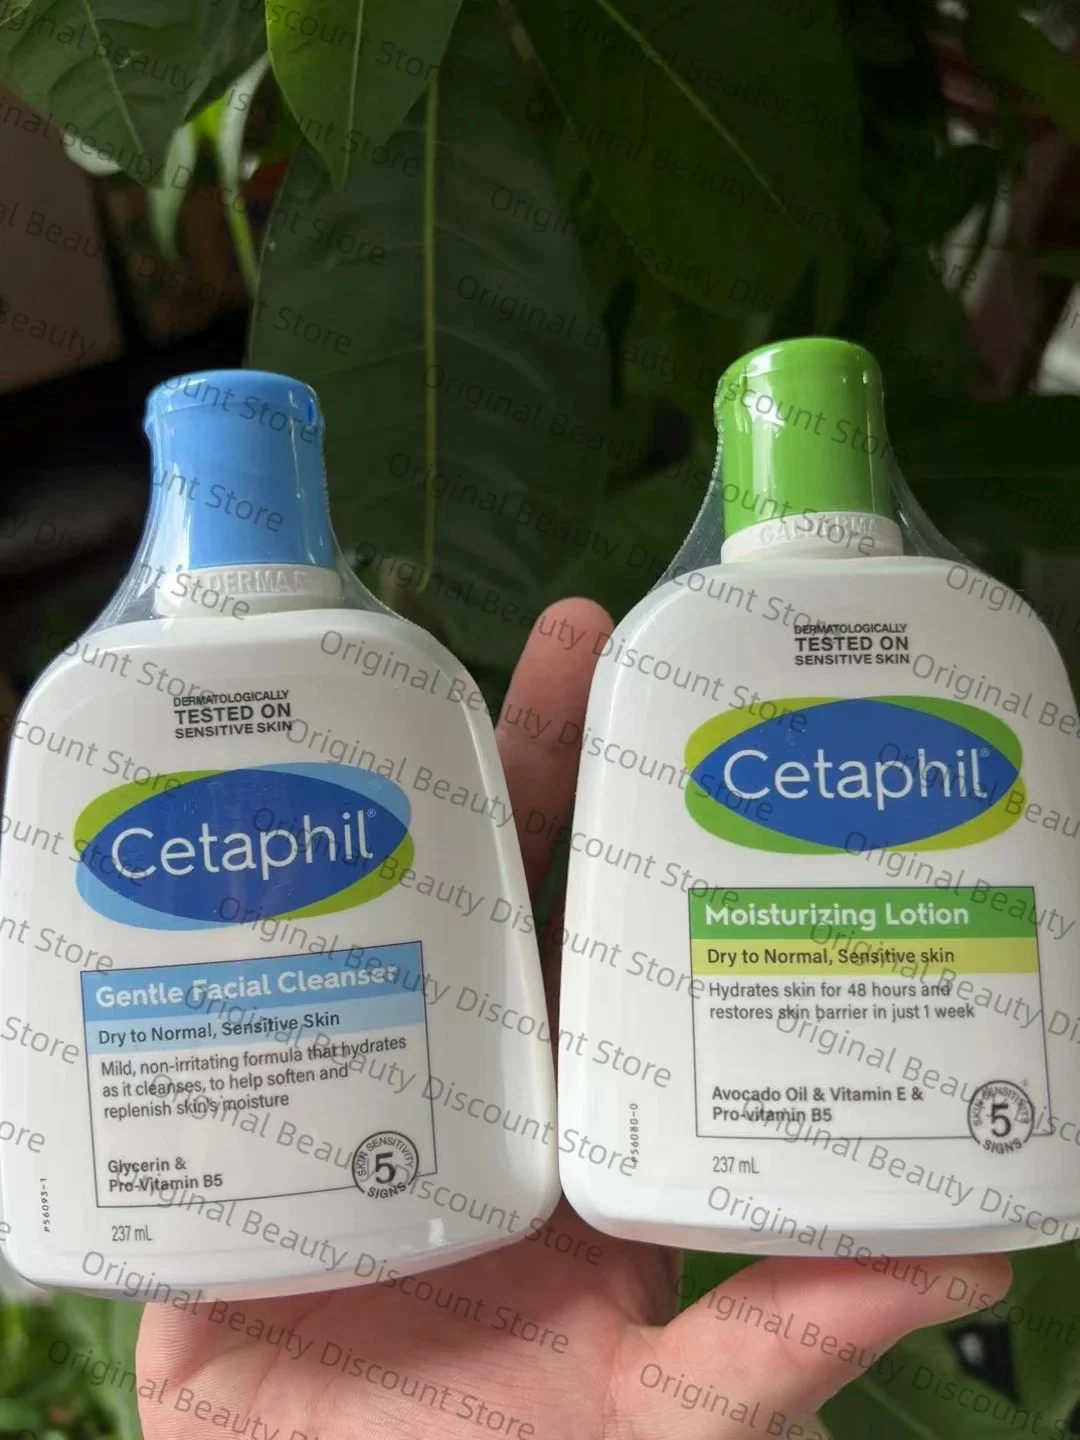 

Cetaphil, Нежное очищающее средство для кожи, увлажняющее и успокаивающее средство для умывания лица, без запаха, для всех типов кожи, 500 мл